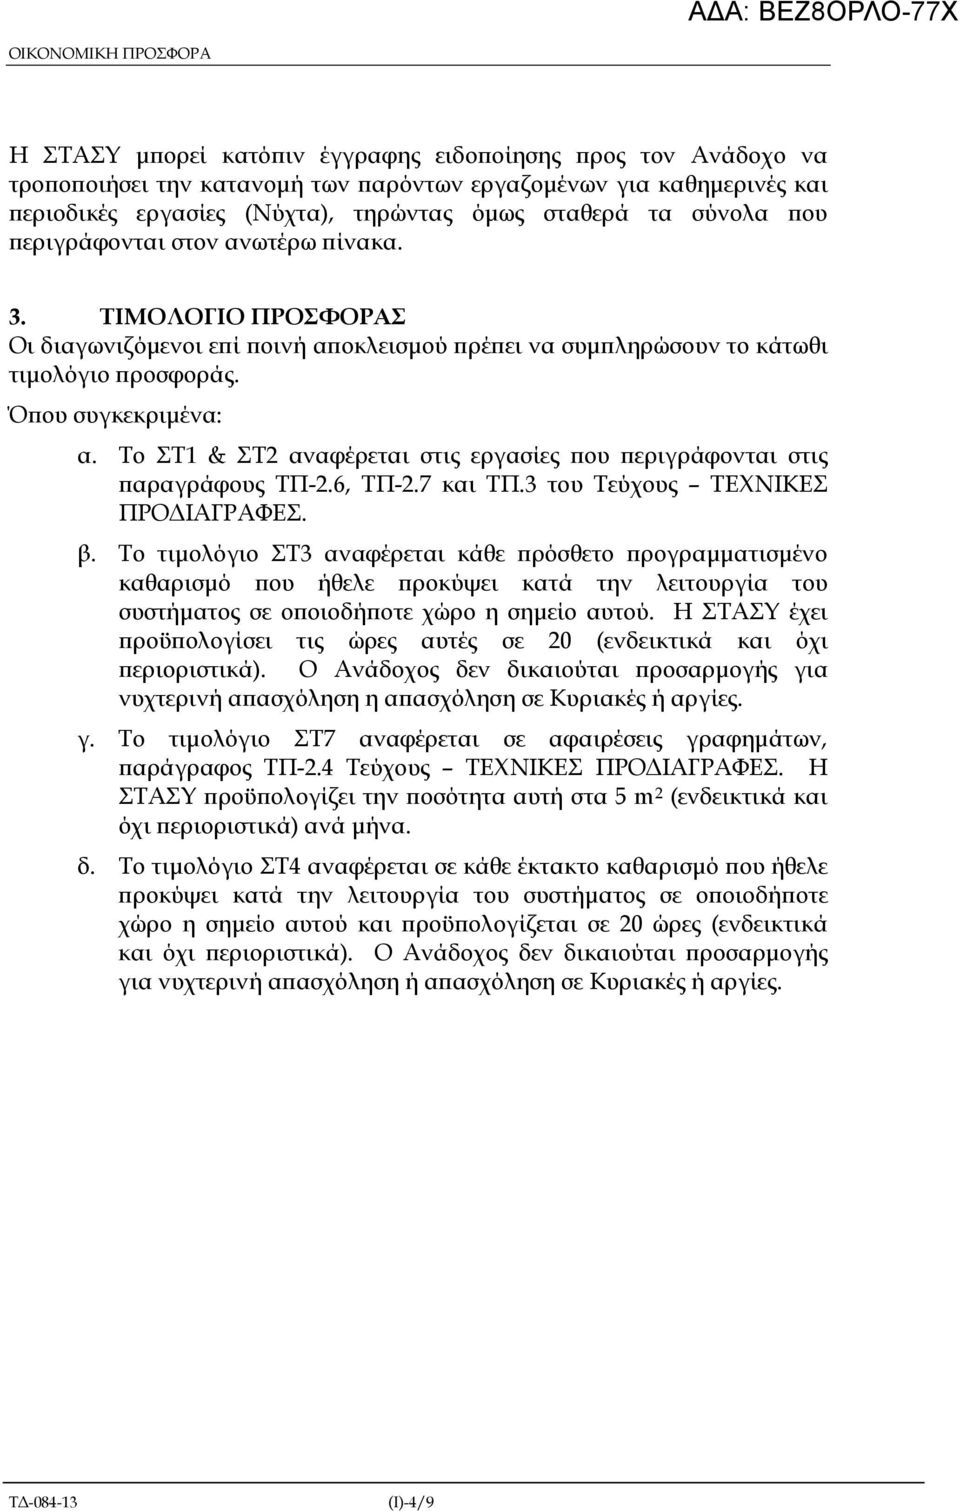 Το ΣΤ1 & ΣΤ2 αναφέρεται στις εργασίες ου εριγράφονται στις αραγράφους ΤΠ-2.6, ΤΠ-2.7 και TΠ.3 του Τεύχους ΤΕΧΝΙΚΕΣ ΠΡΟ ΙΑΓΡΑΦΕΣ. β.